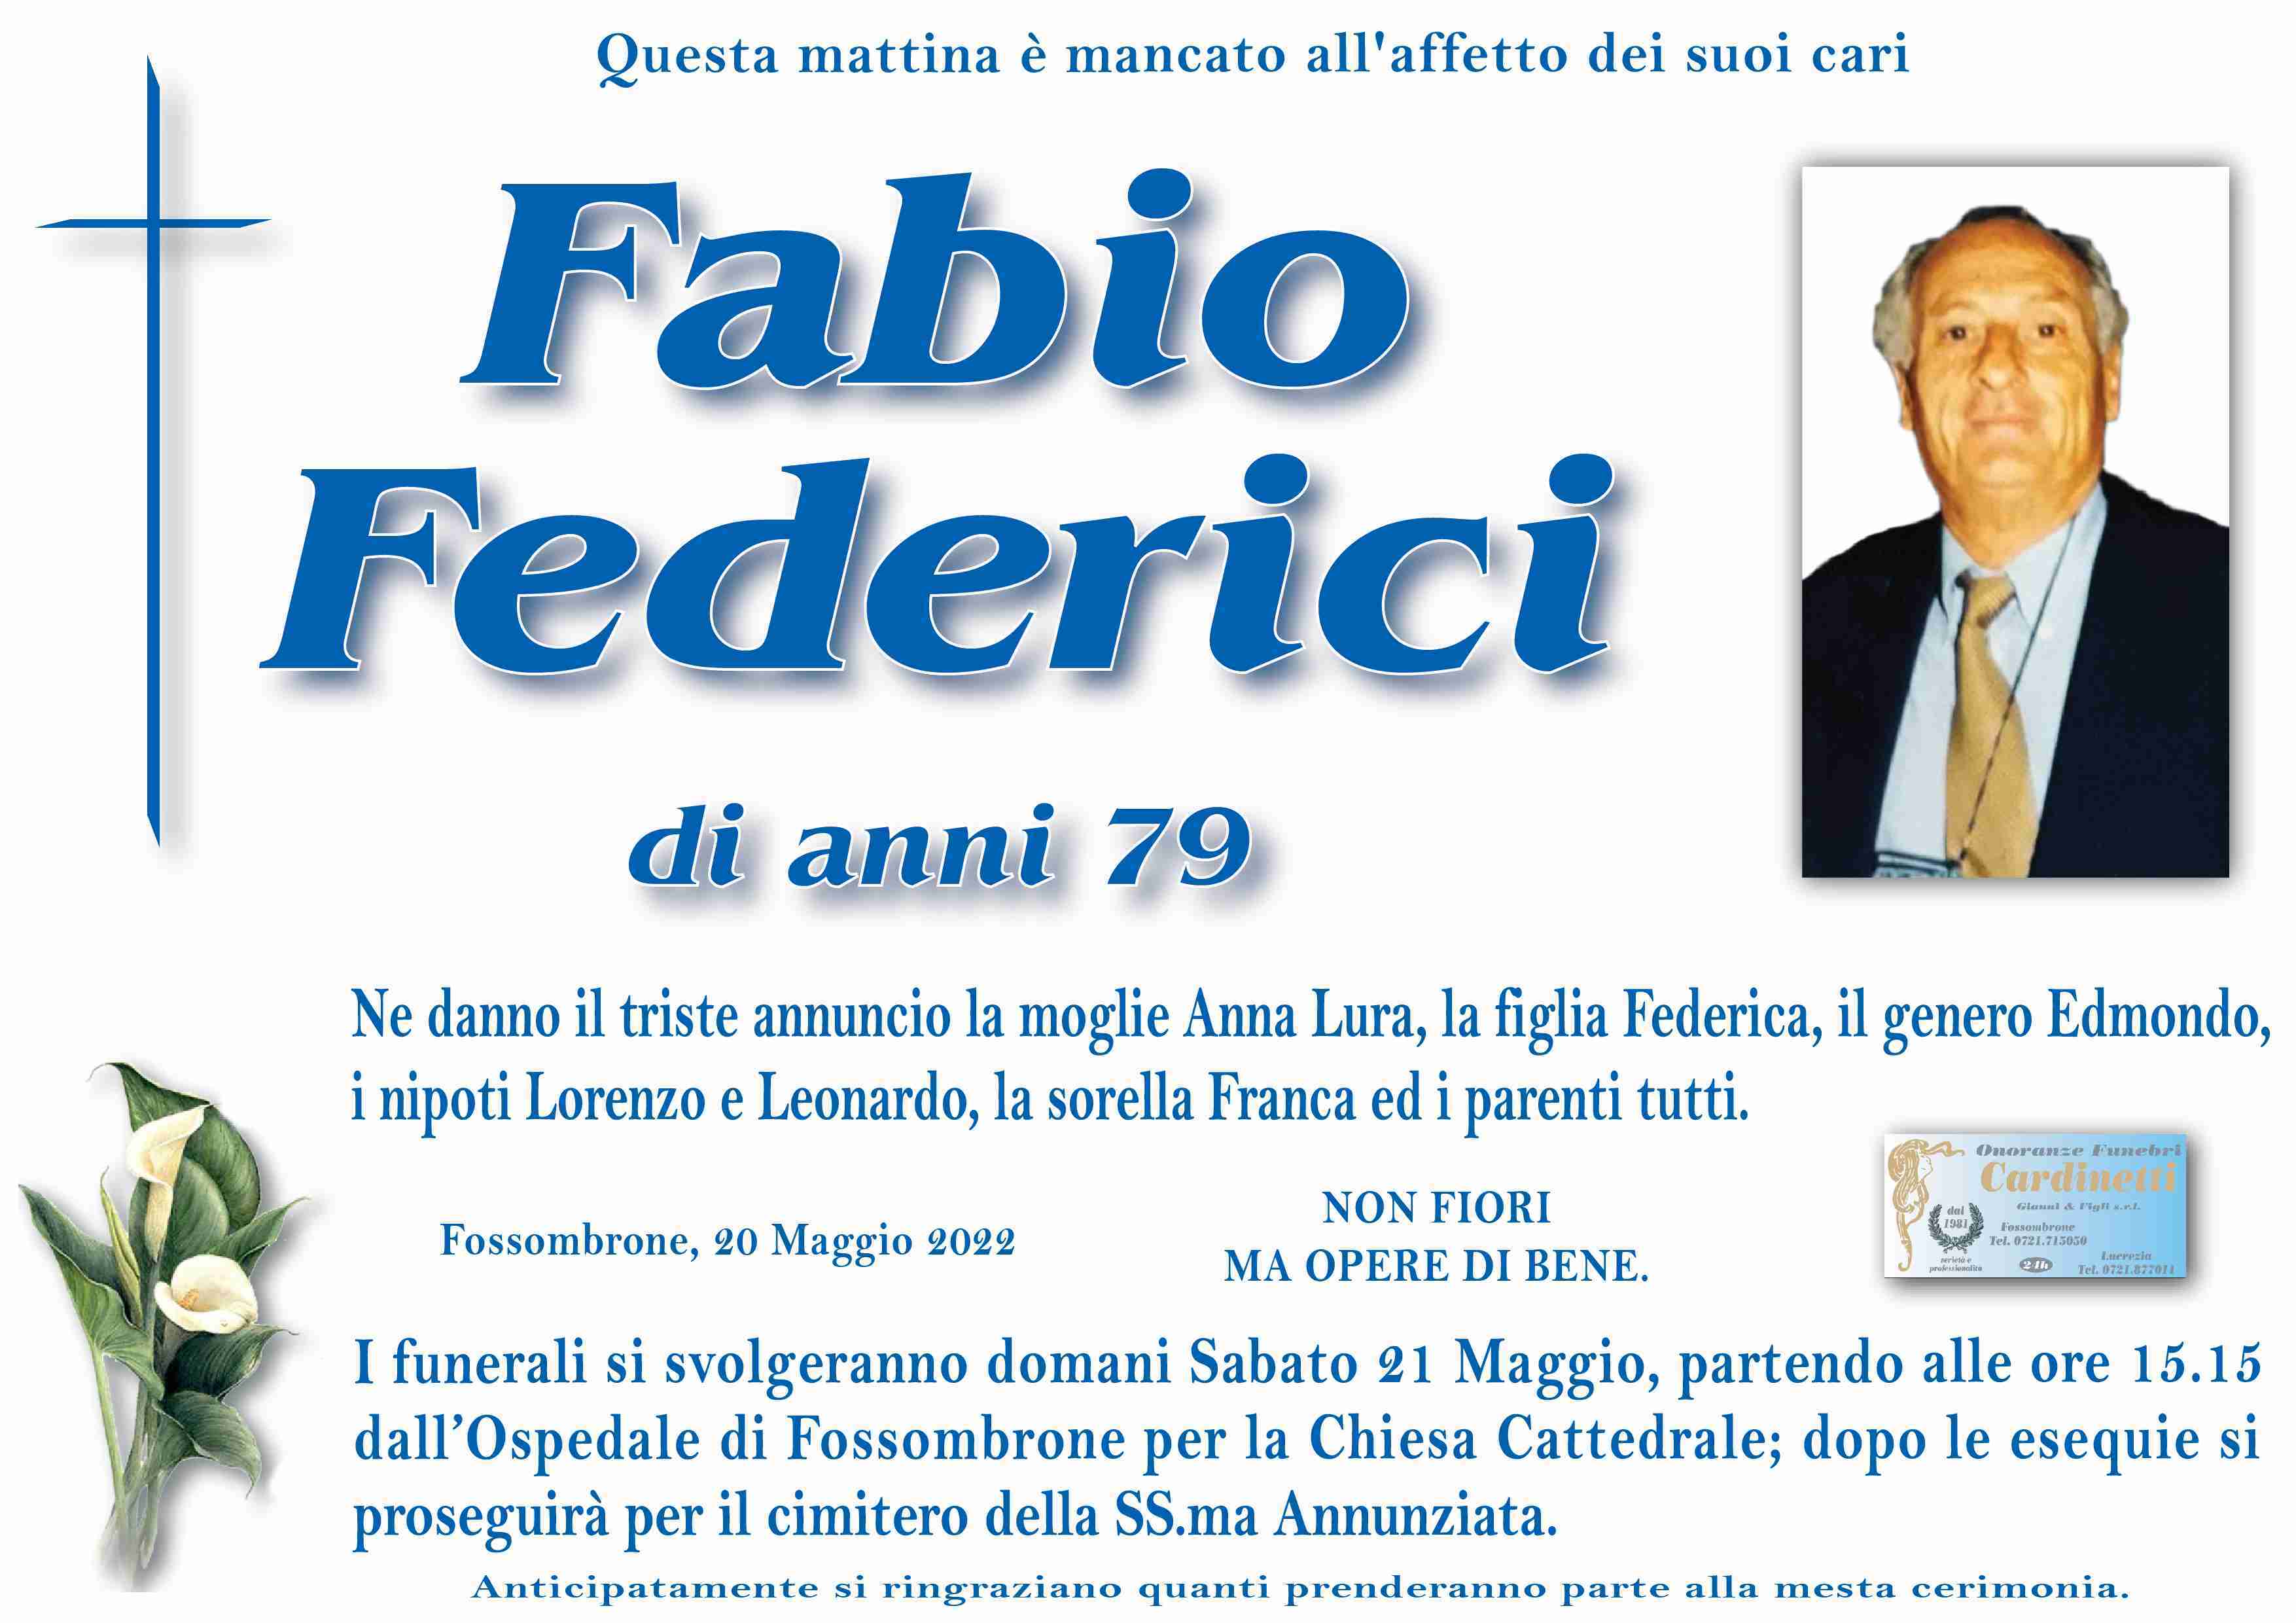 Fabio Federici